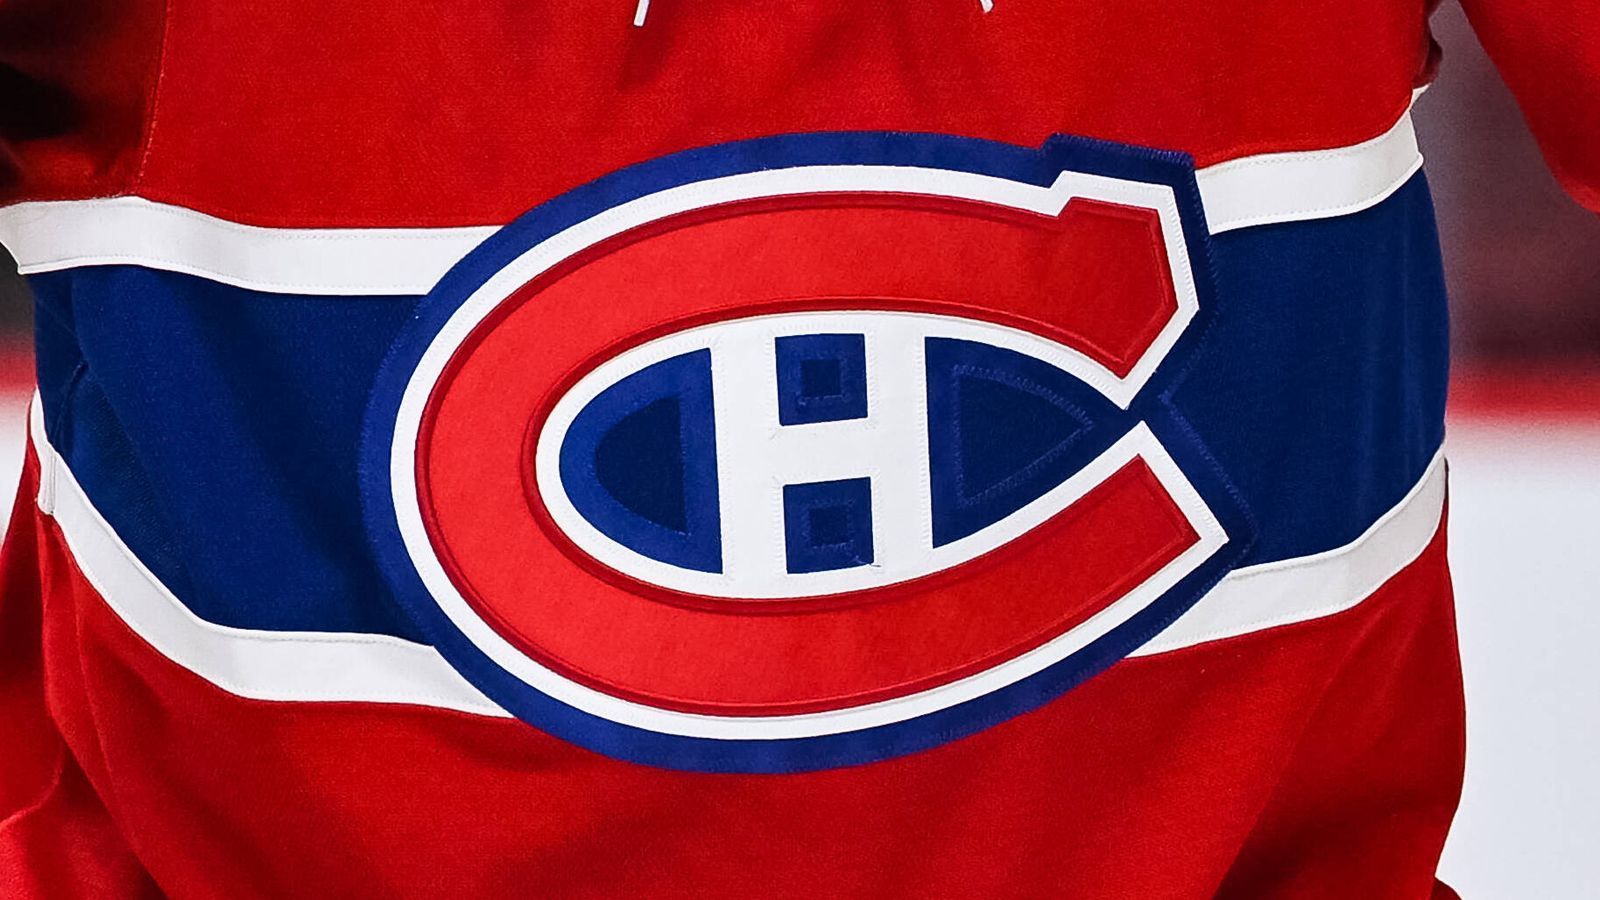 
                <strong>Montreal Canadiens</strong><br>
                Noch bevor die NHL im Jahre 1917 gegründet wurde, hatte Montreal viele Teams, die verschiedene Viertel der Stadt repräsentierten und unterschiedliche Namen hatten. Das Team aus dem französische Viertel wurde Canadiens genannt. Die Besonderheit war die französische Schreibweise mit einem e anstelle eines a. Der Name bestand bereits im Jahre 1909. Die Montreal Canadiens sind das einzige Team, das bereits vor der Gründung der NHL seinen Namen hatte.
              